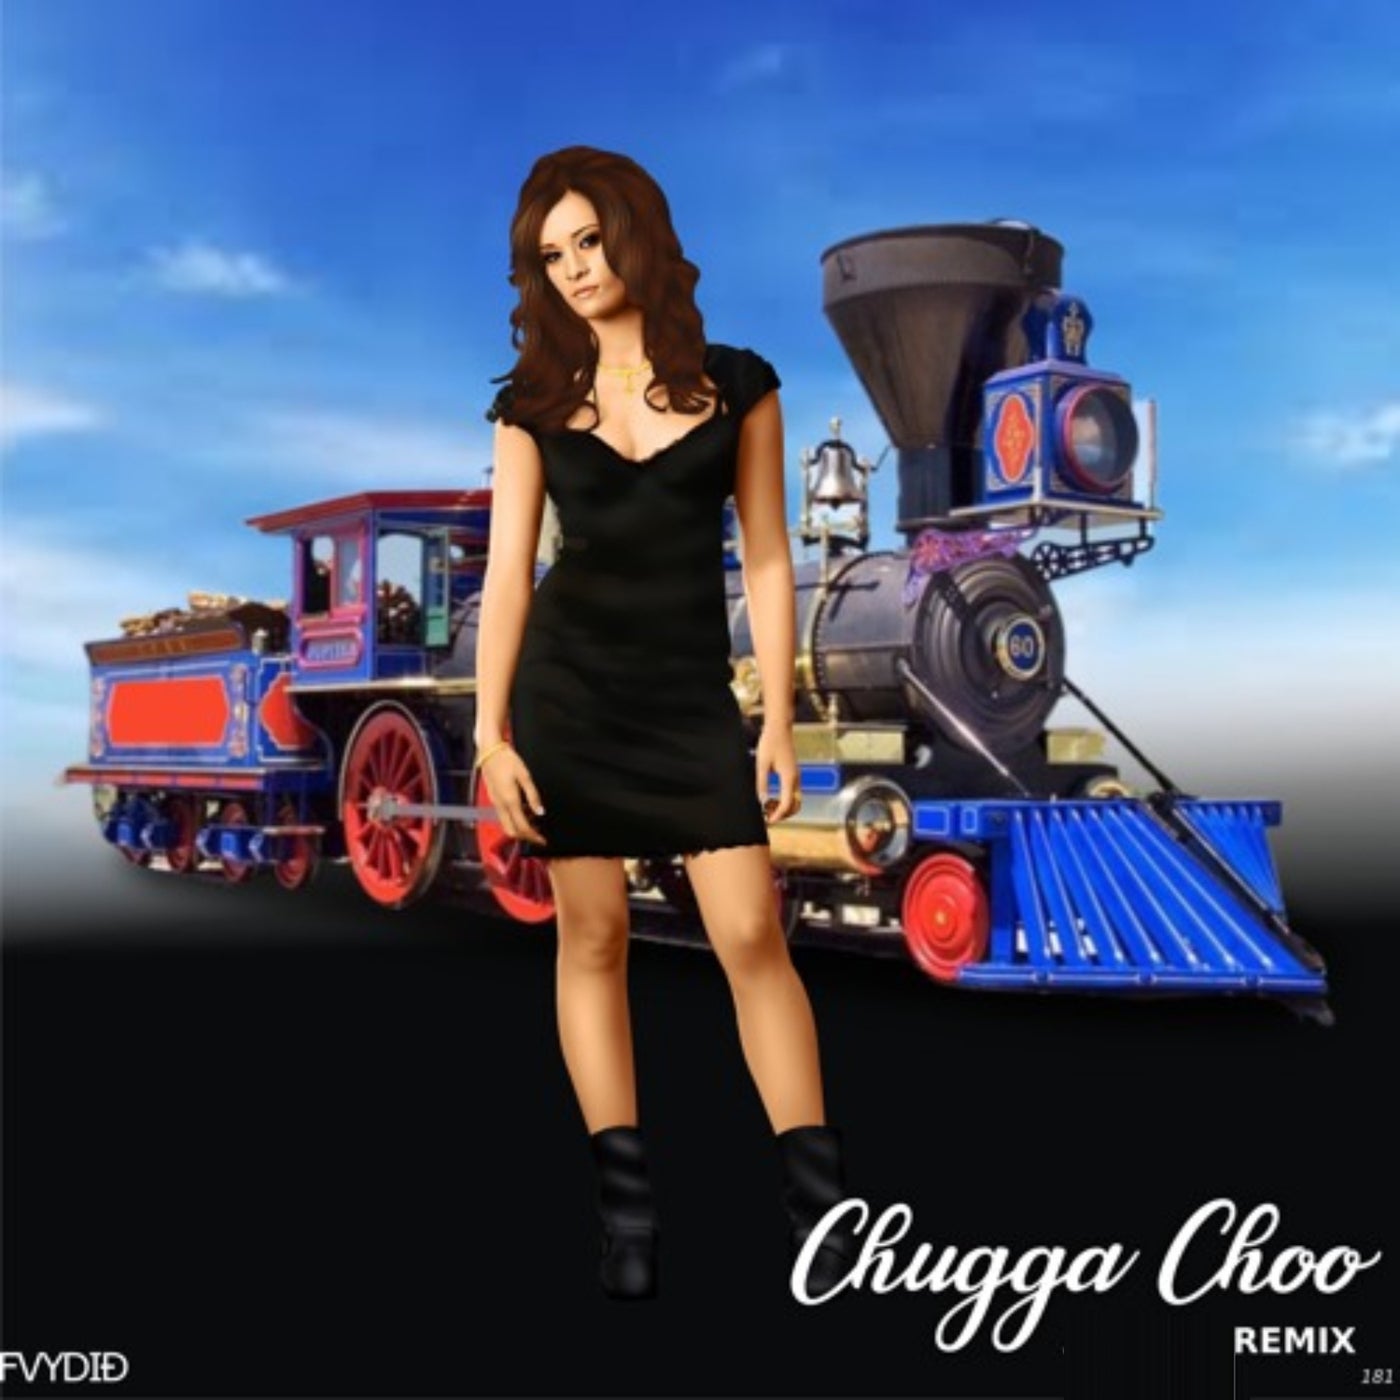 Chugga Choo (Remix)